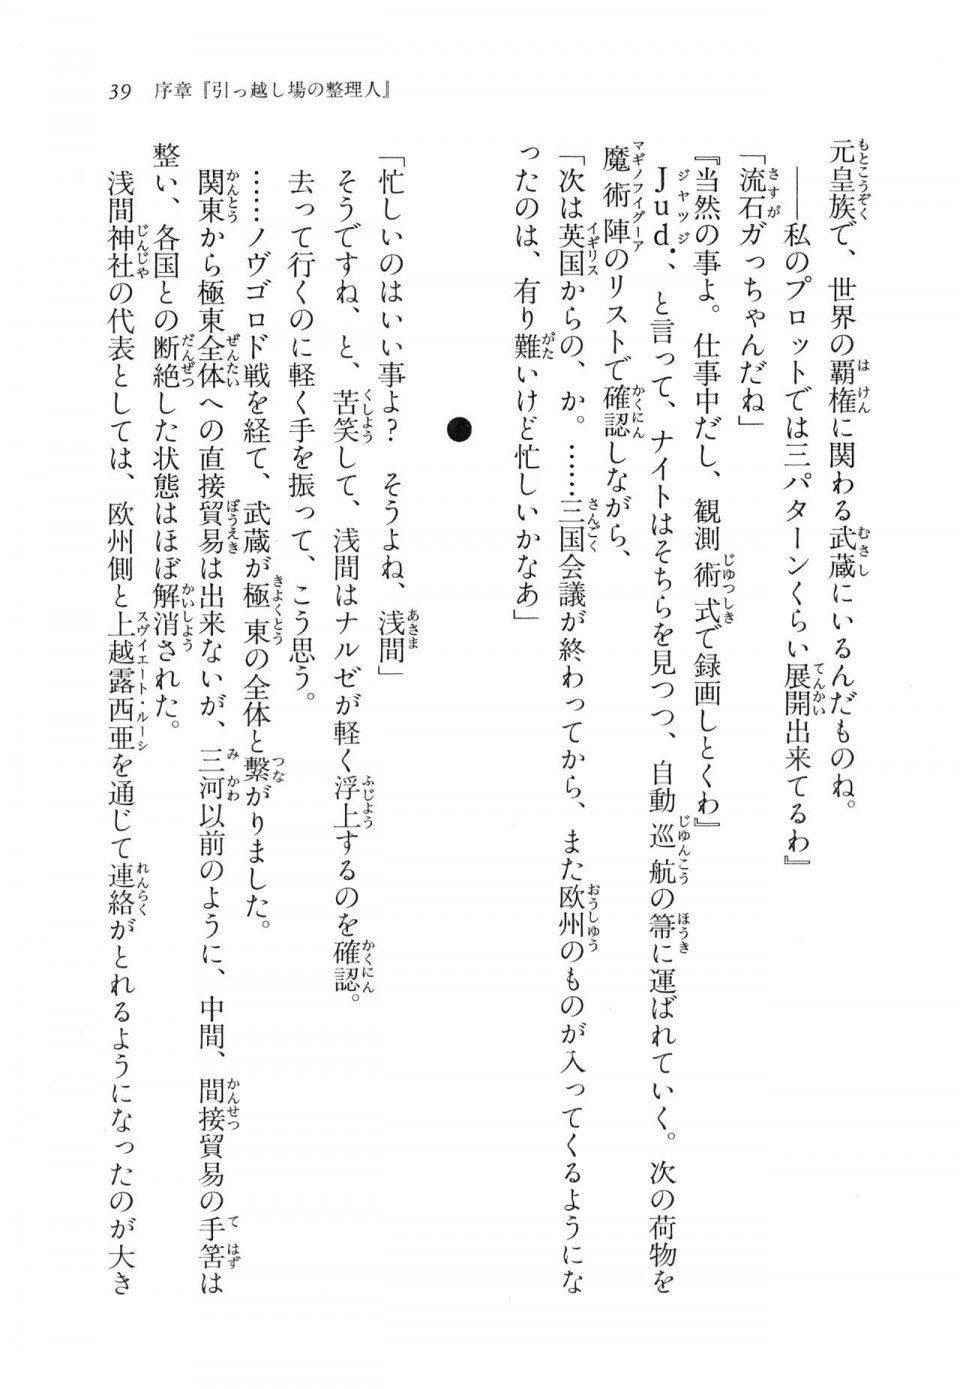 Kyoukai Senjou no Horizon LN Vol 11(5A) - Photo #40